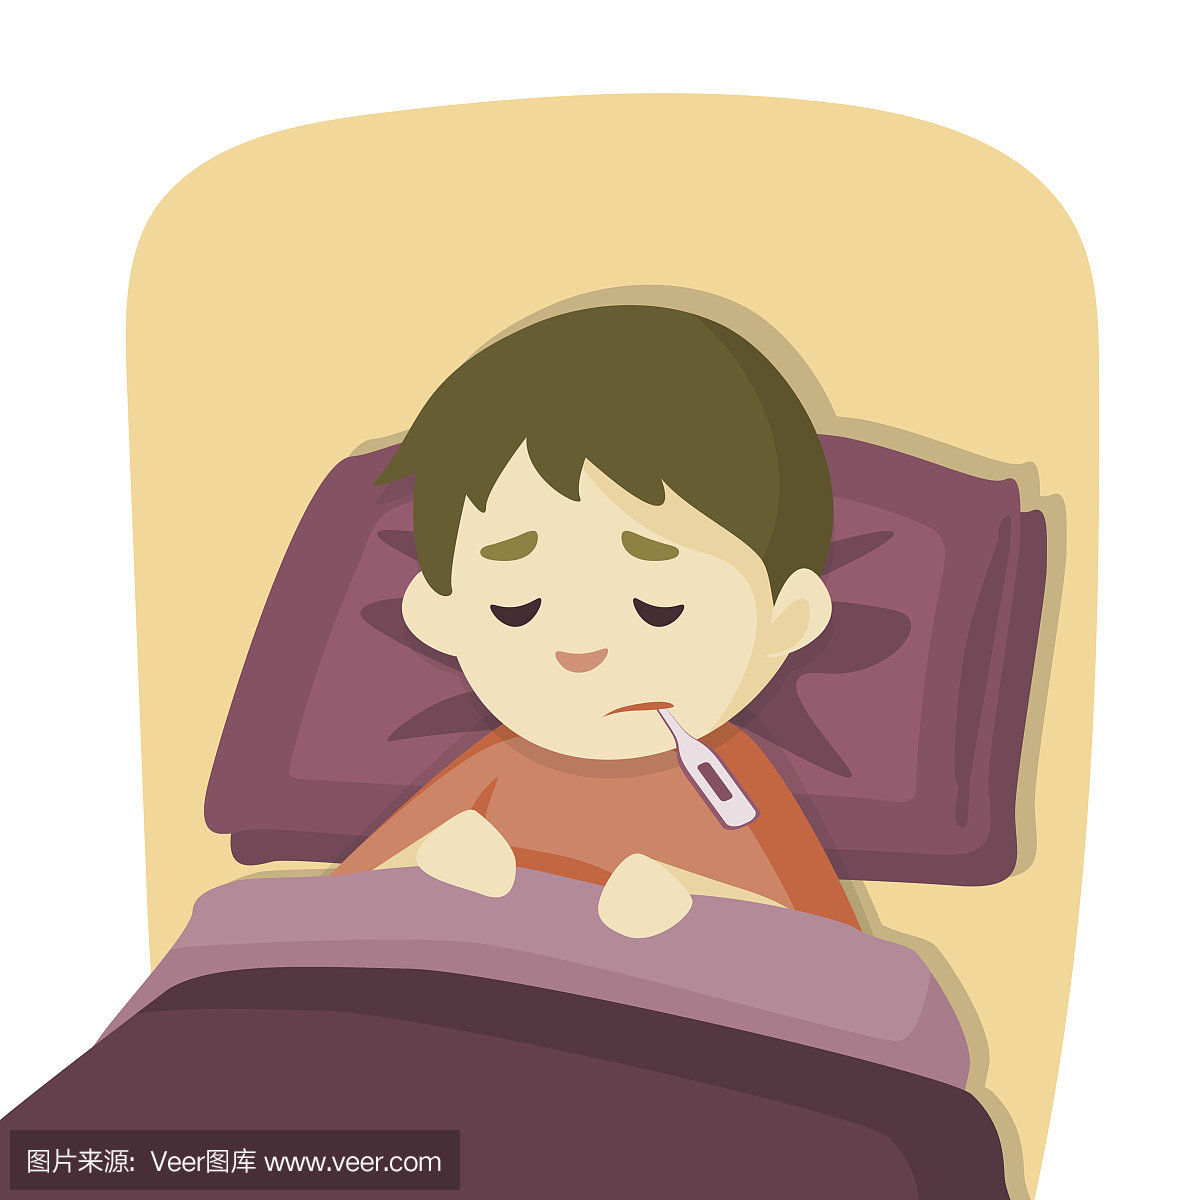 生病的小男孩躺在床上发烧,矢量卡通